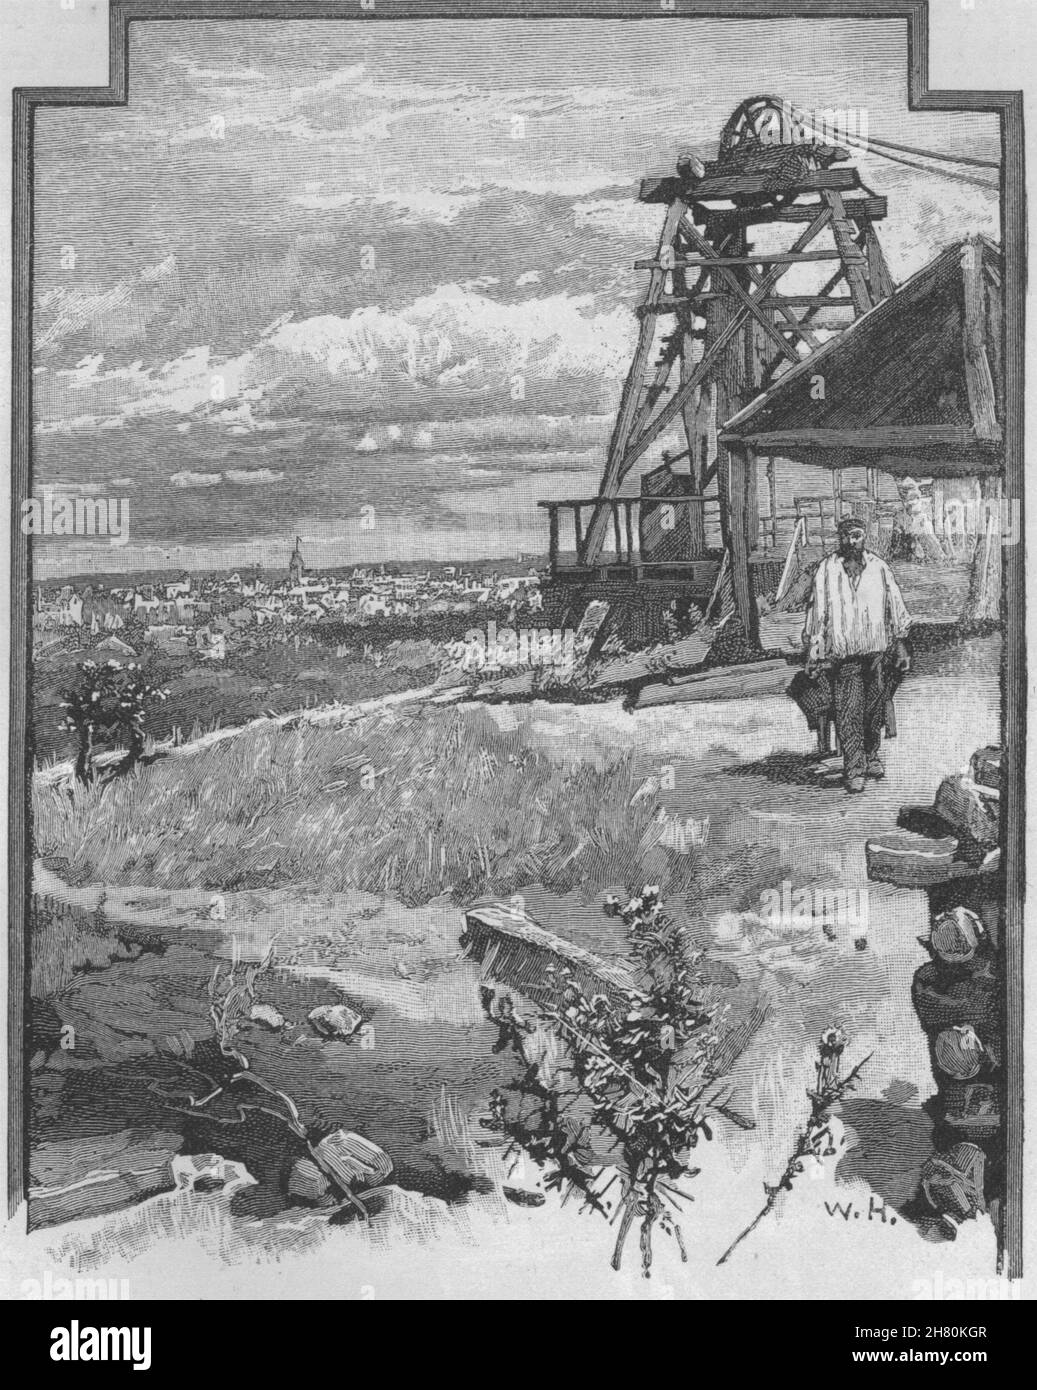 La città, da Black Hill. Ballarat. Australia 1890 antica immagine di stampa Foto Stock